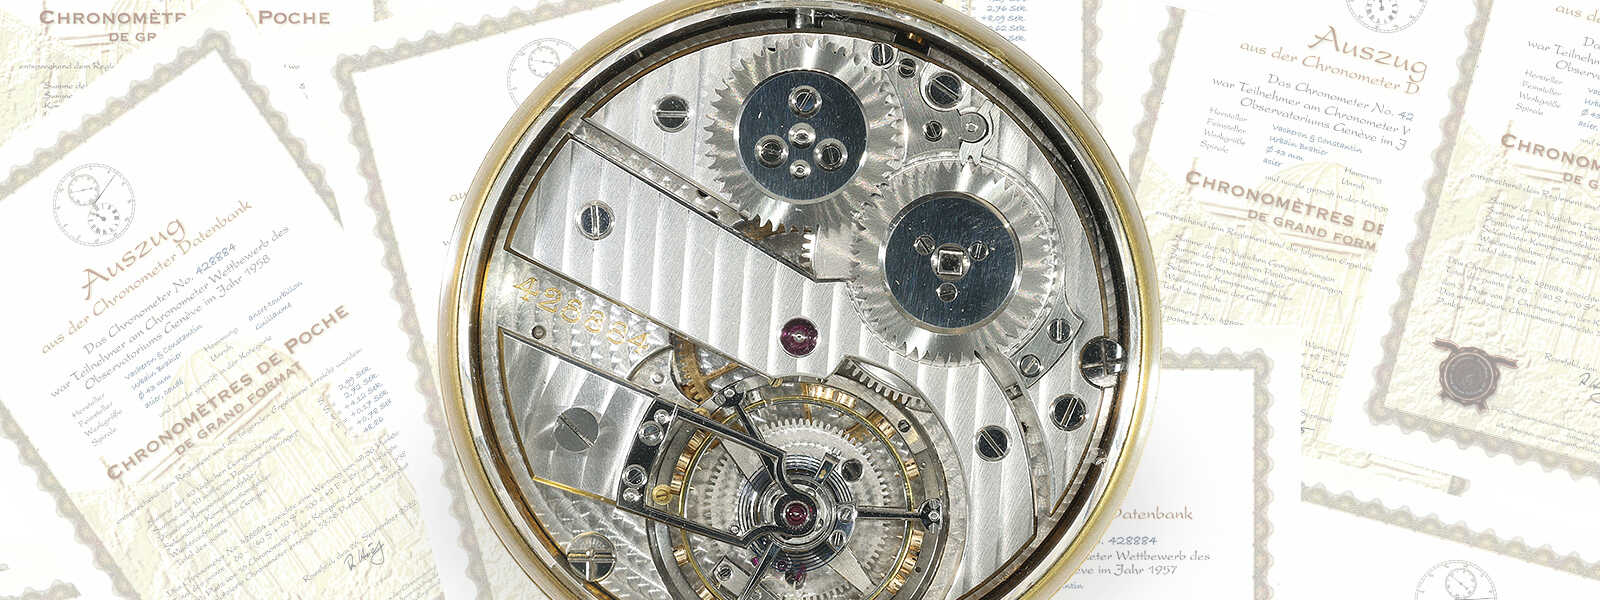 Historisch bedeutendes Wettbewerbschronometer, TOURBILLON 428884, Vacheron & Constantin, ca.1940